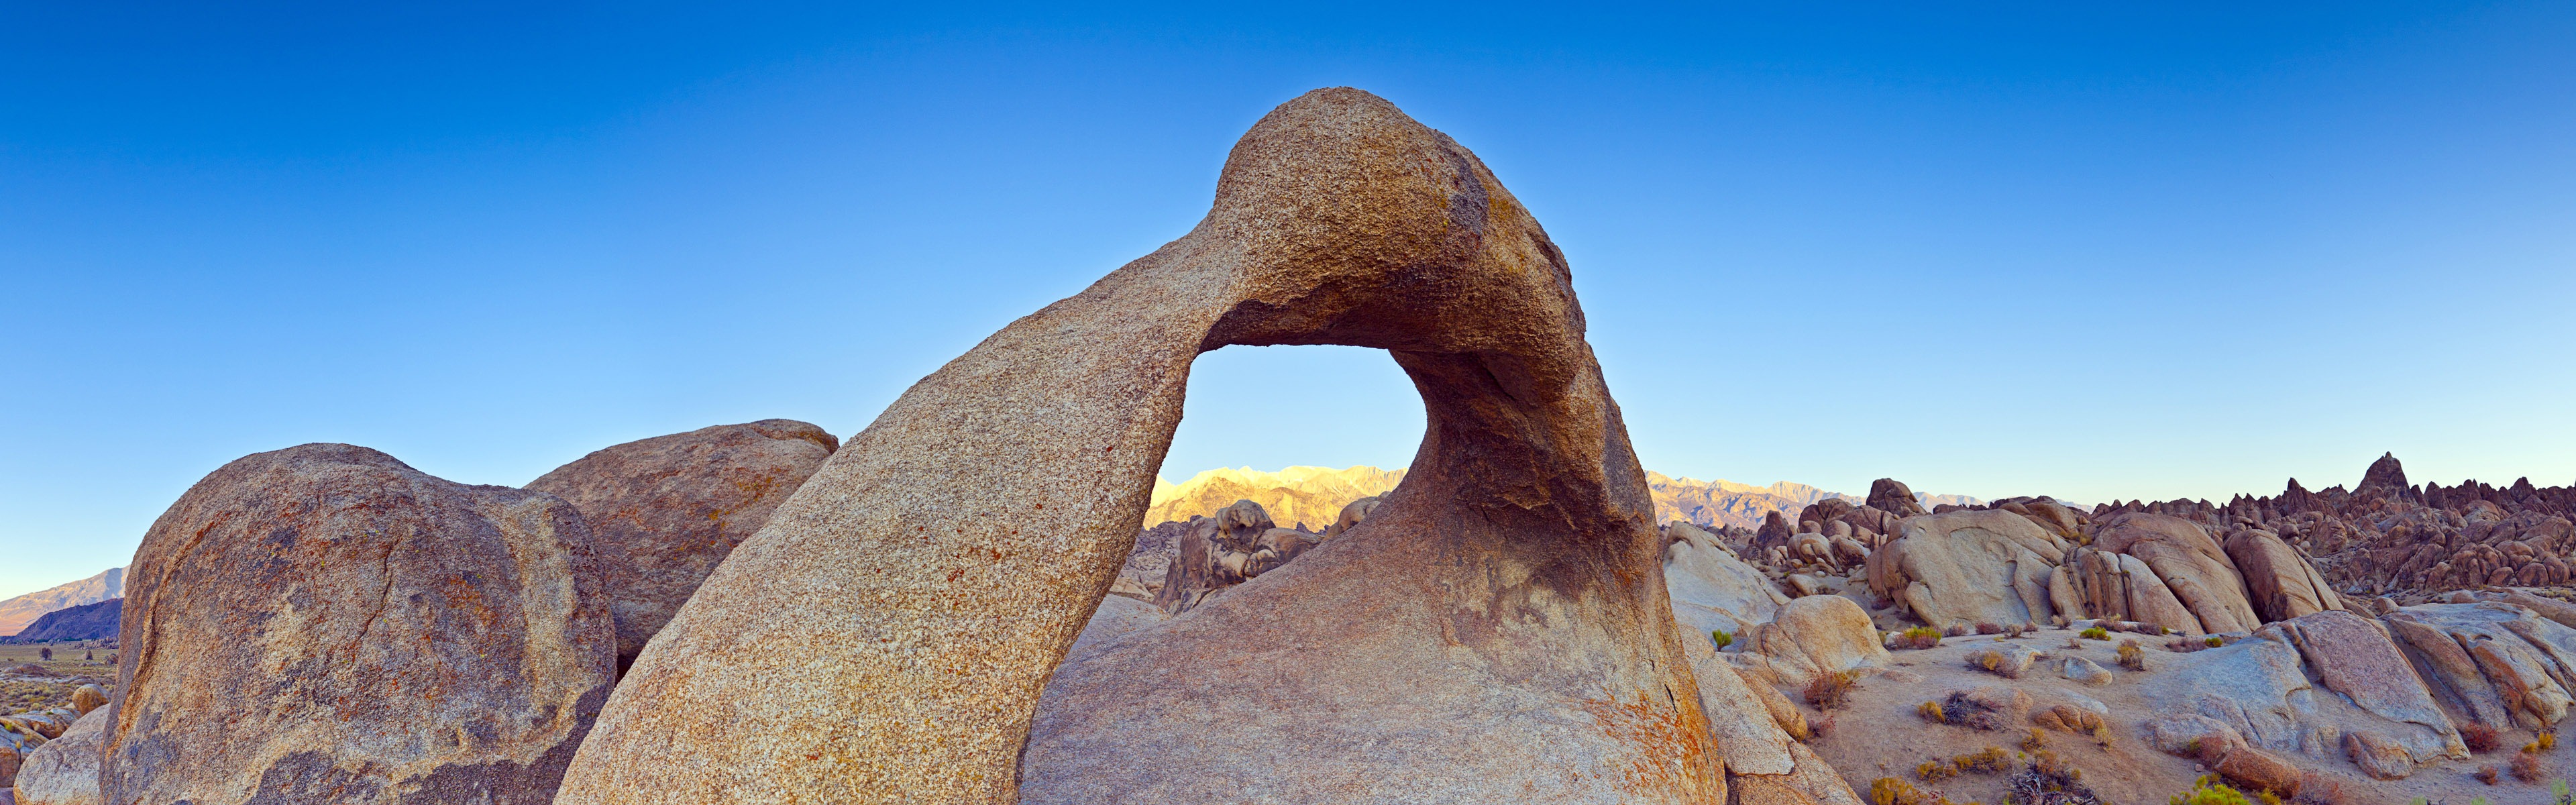 Les déserts chauds et arides, de Windows 8 fonds d'écran widescreen panoramique #5 - 3840x1200